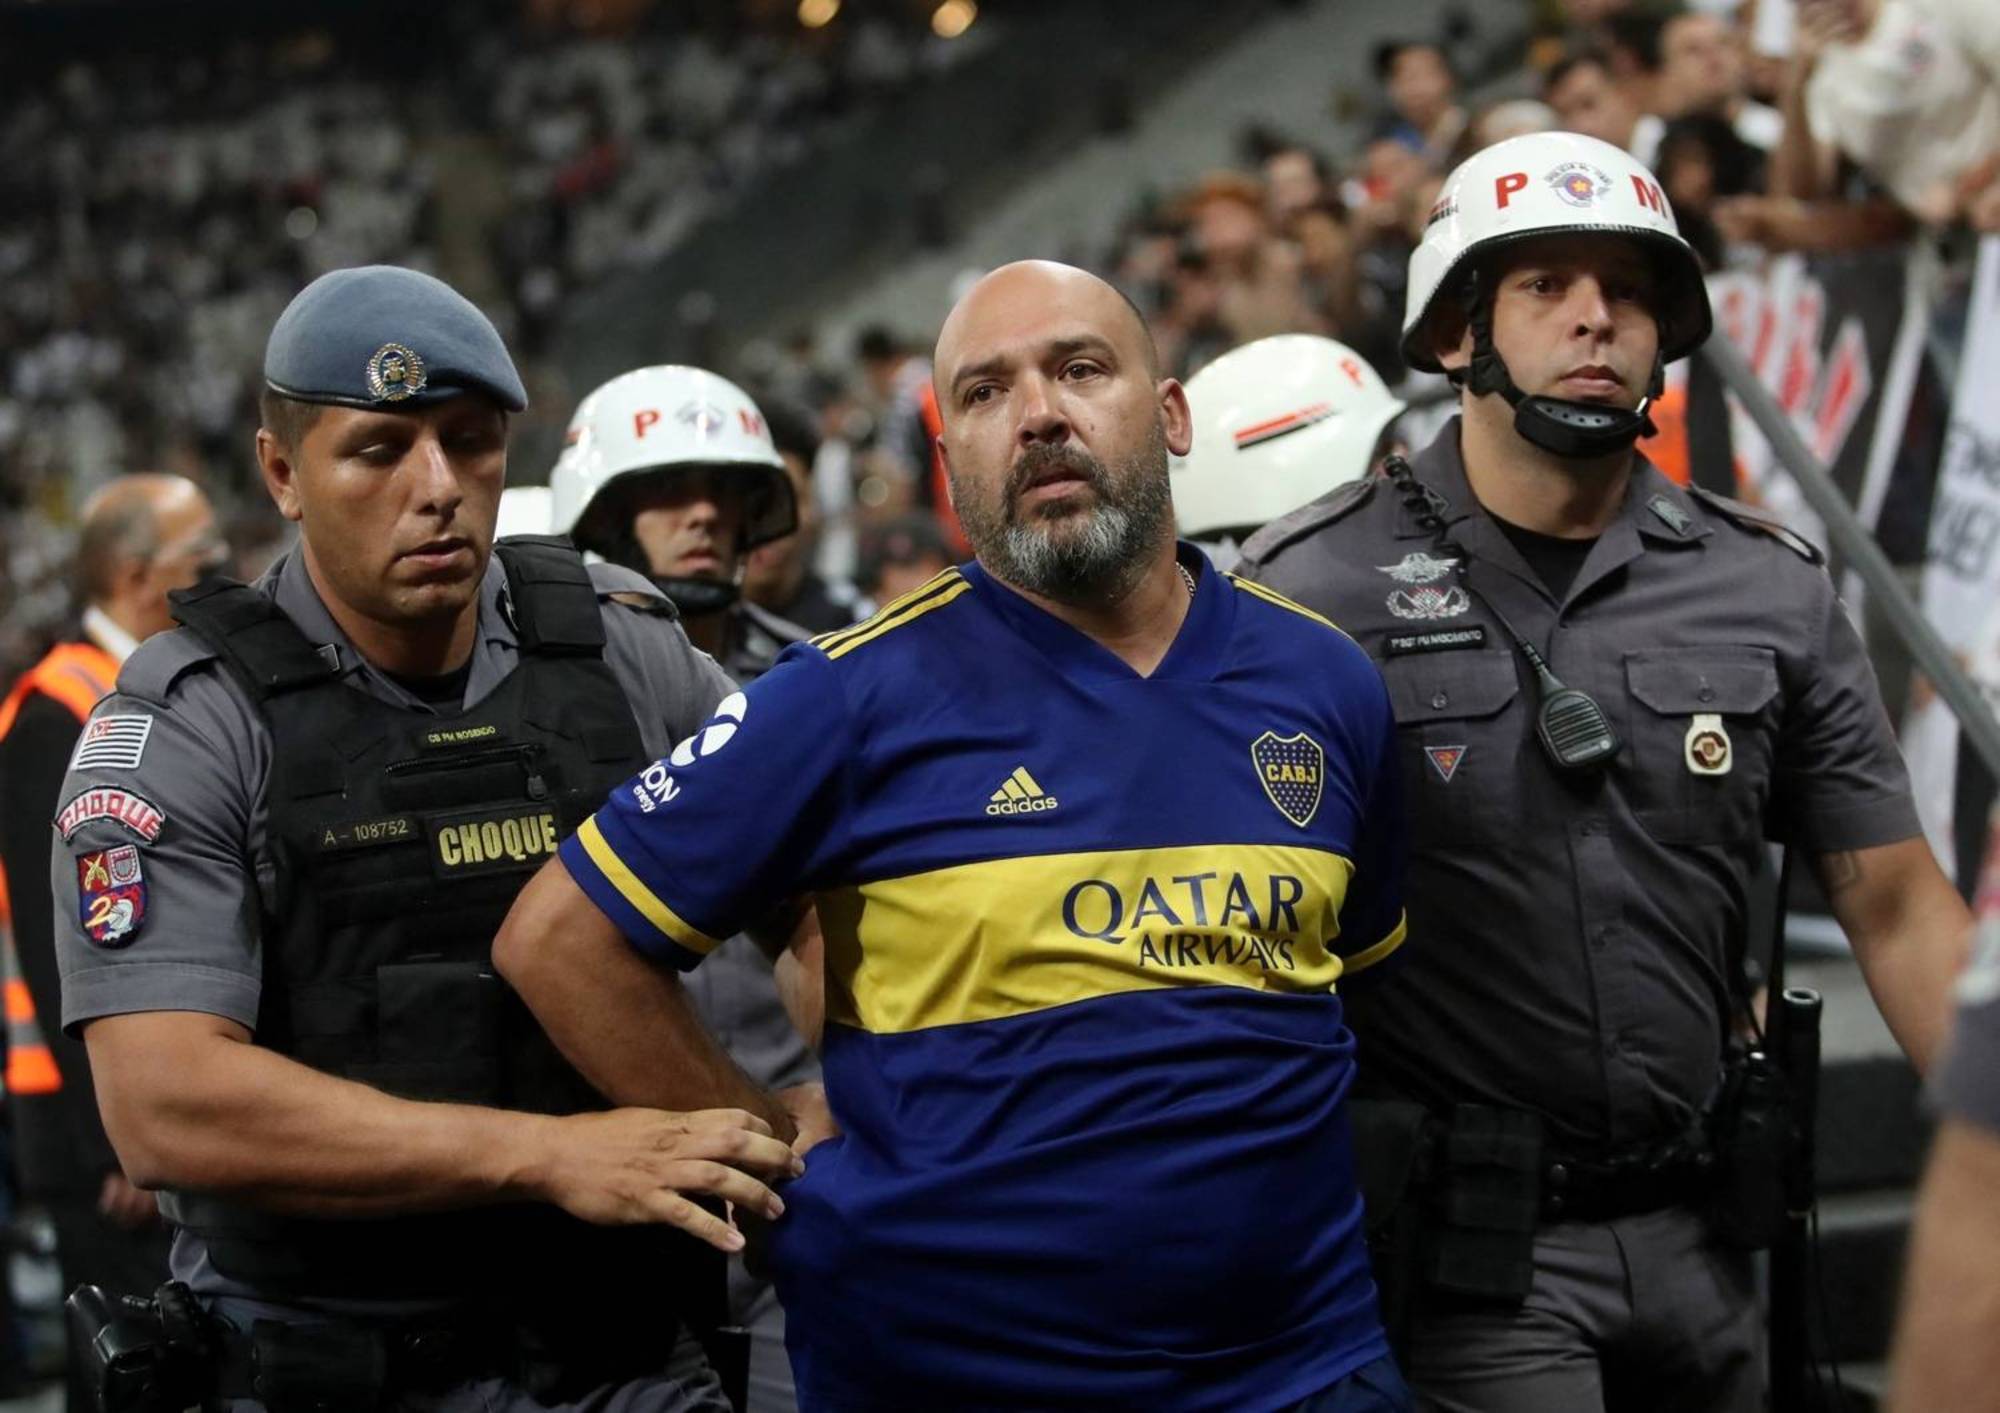 Corintianos são alvos de racismo pela terceira vez diante do Boca: relembre casos contra brasileiros – Fotos